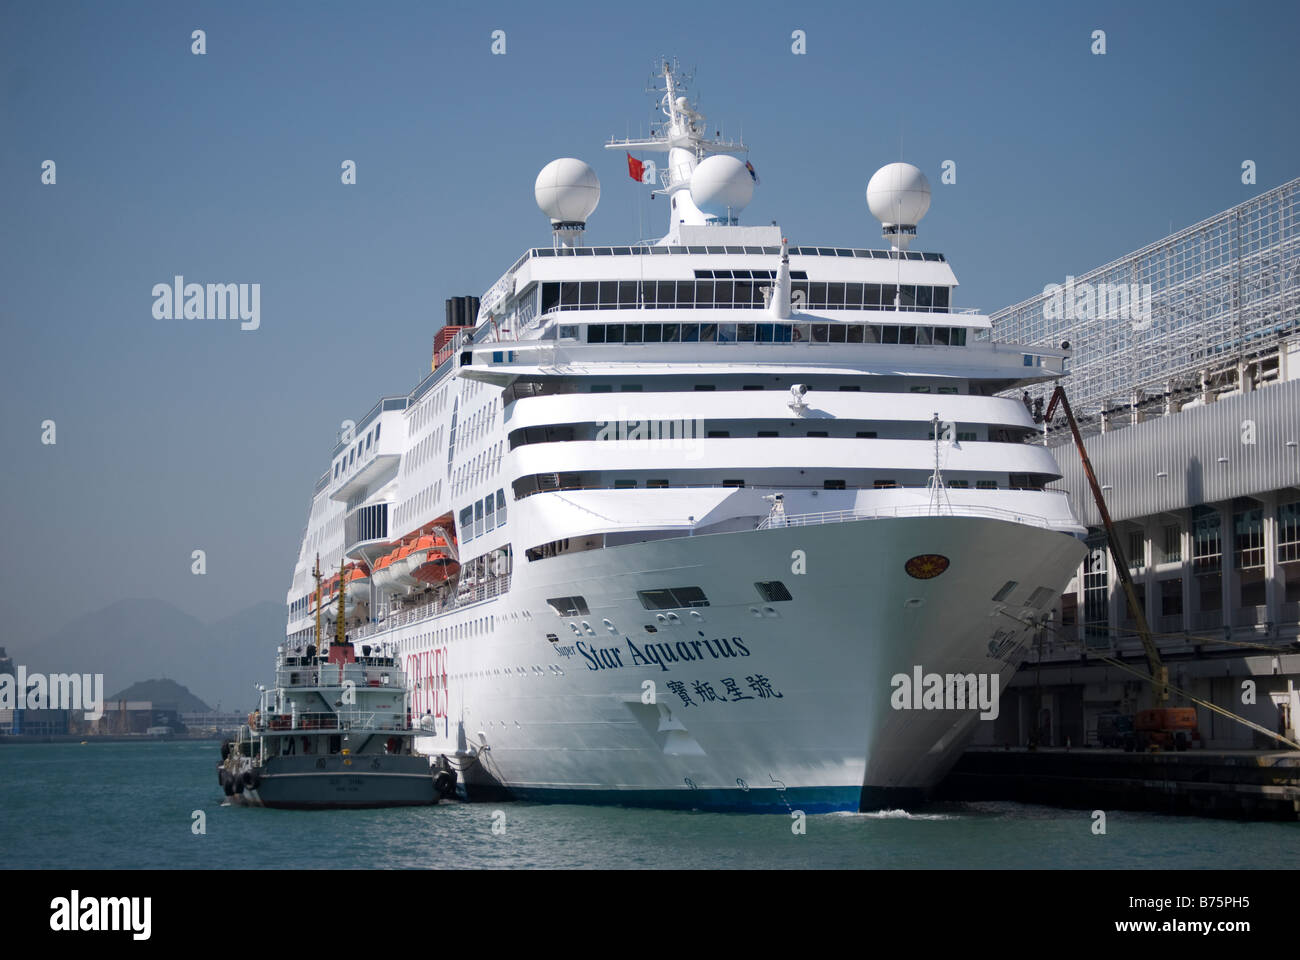 Star Cruises Cruise Liner à quai, Harbour City, Tsim Sha Tsui, Kowloon, Hong Kong, République populaire de Chine Banque D'Images